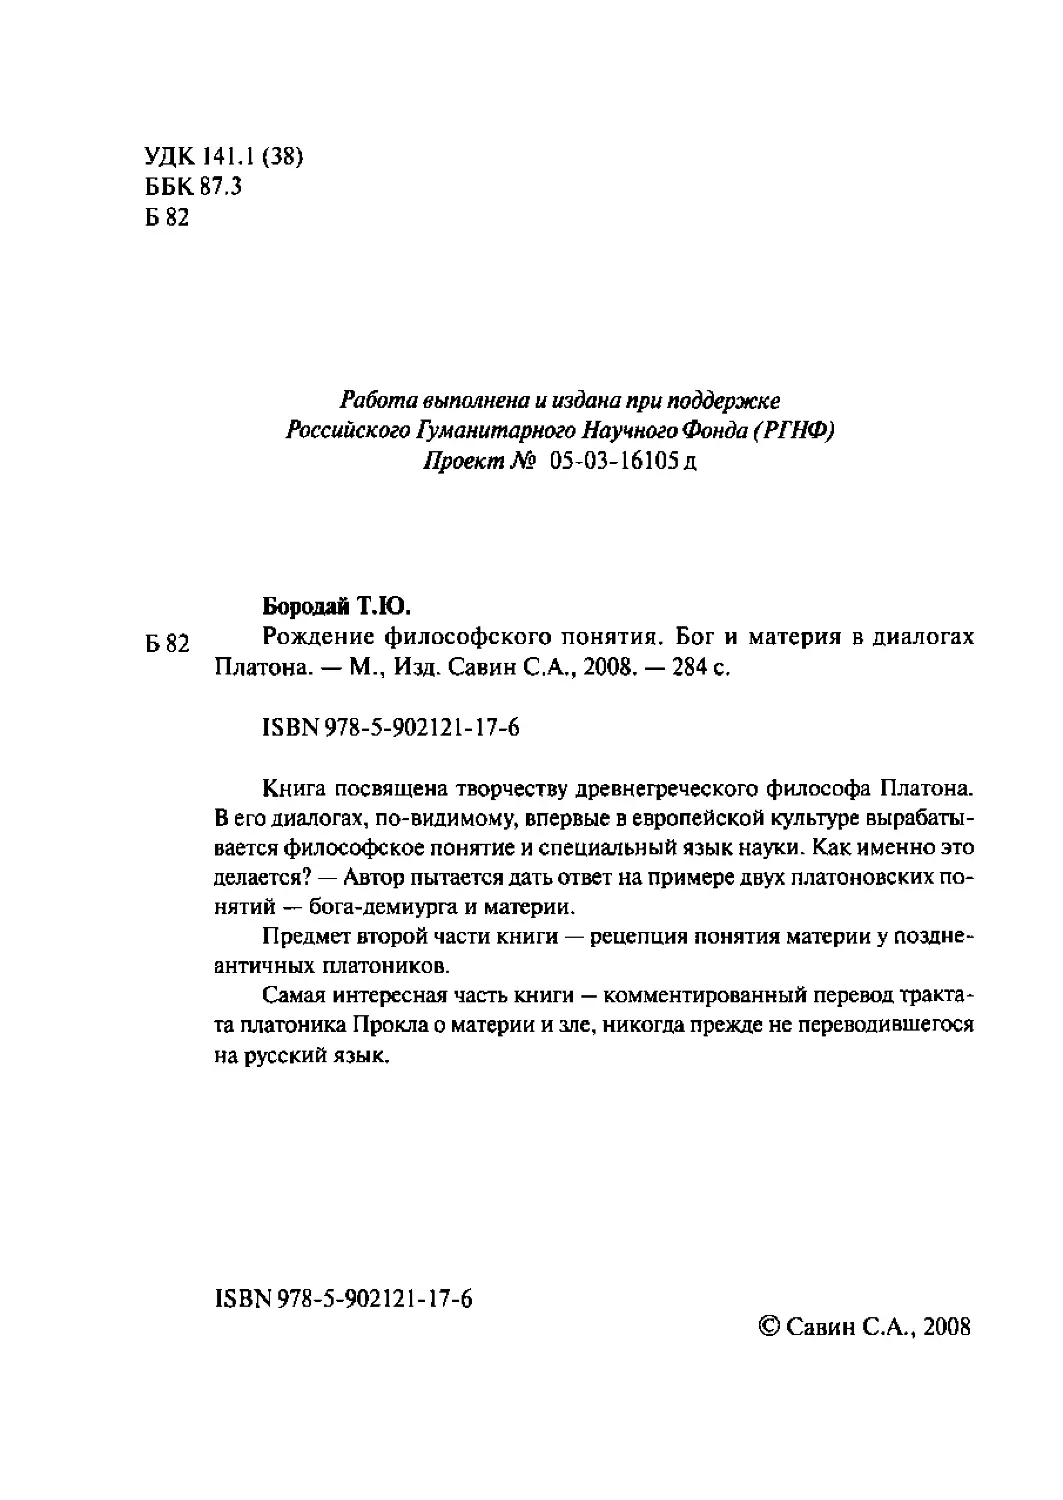 2-rojd_filos_ponyatiya-2008.pdf